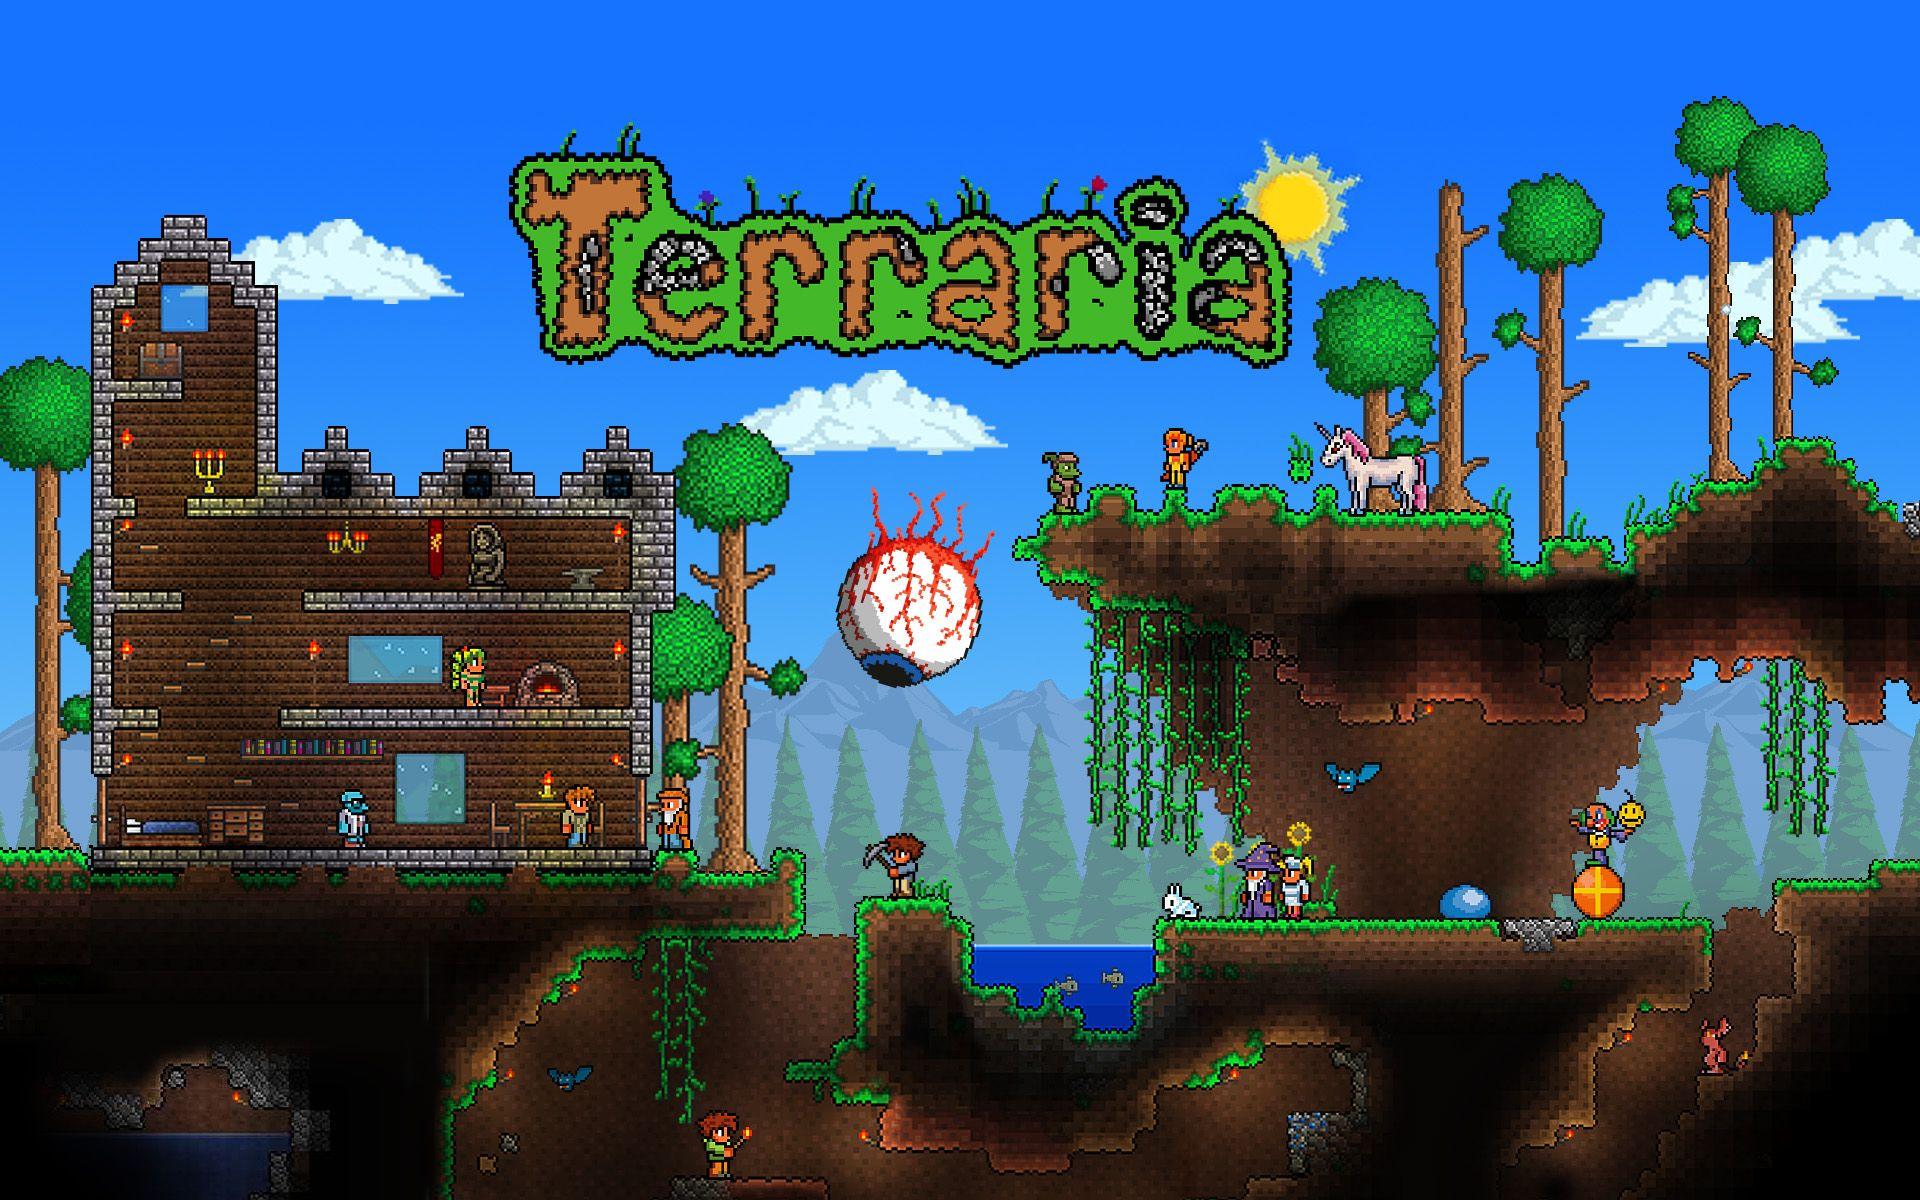 Terraria mobile: Progression guide! Part #1